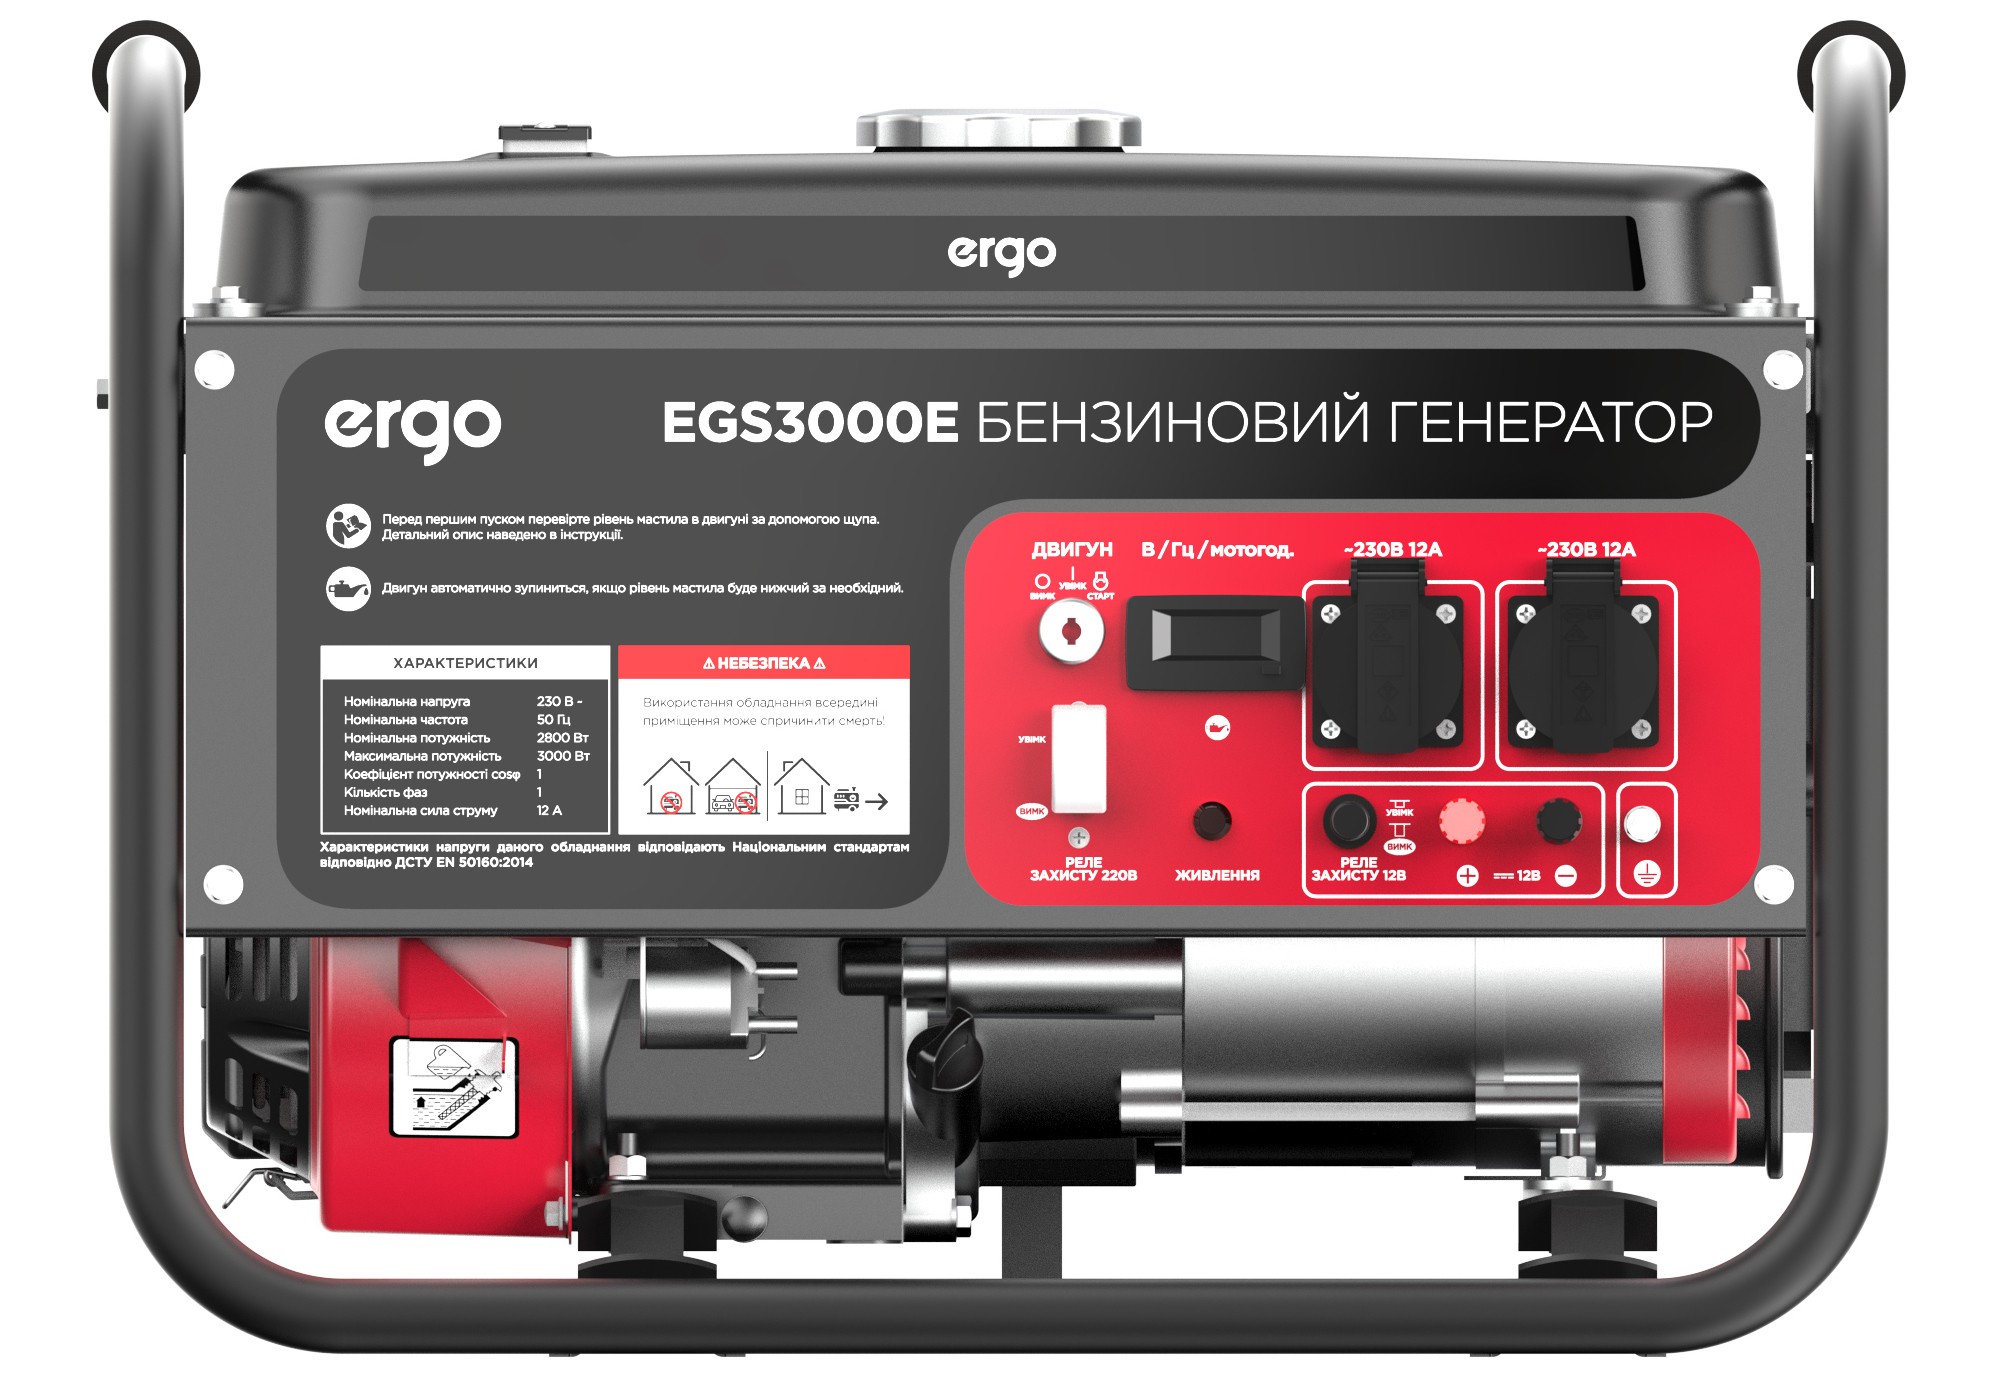 Ergo EGS3000E